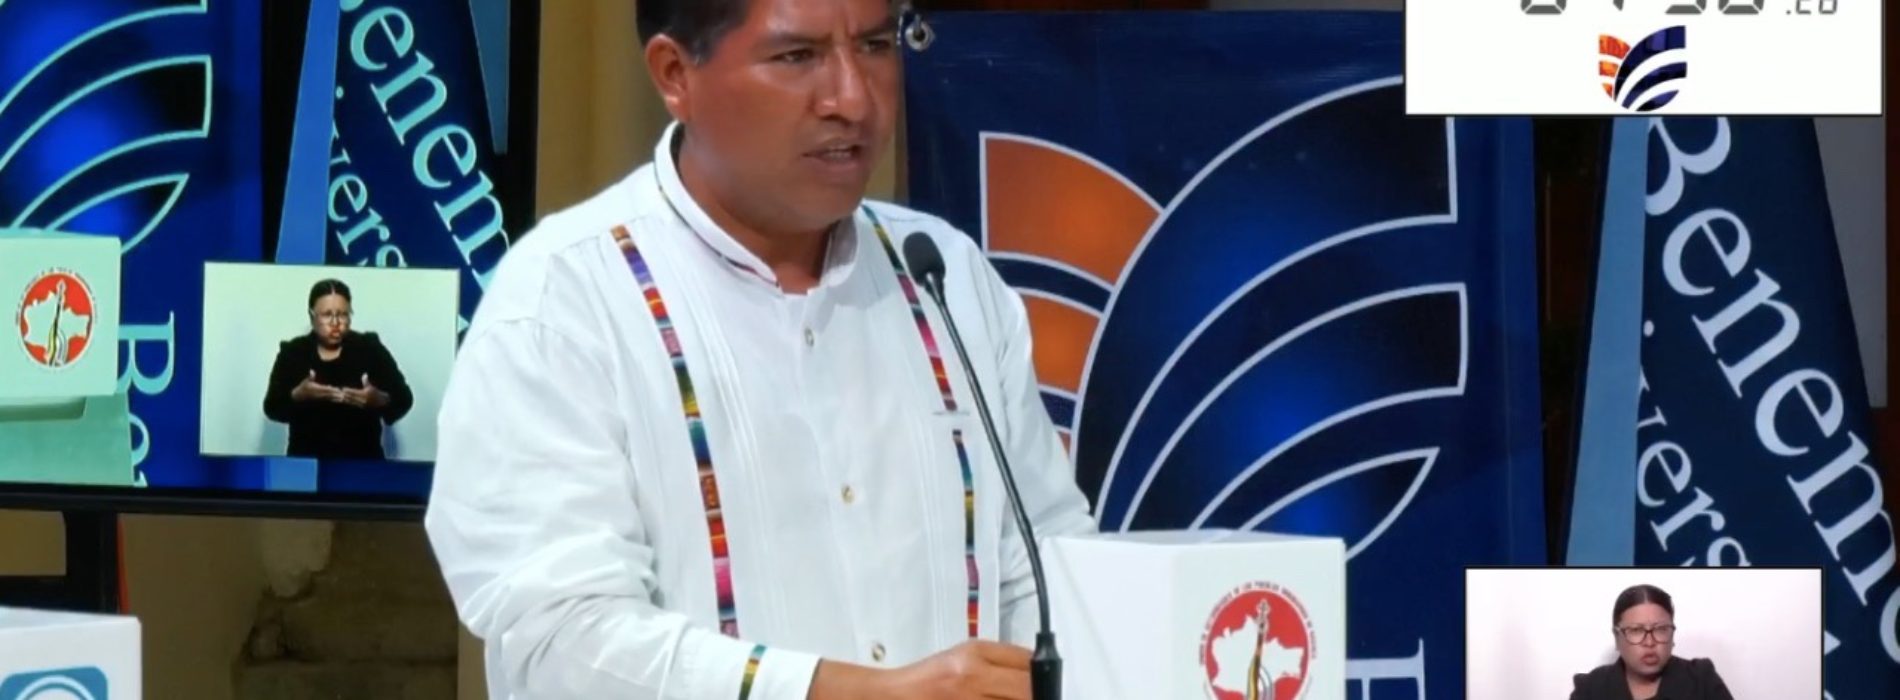 Participa Mauricio Cruz Vargas en debate organizado por la Benemerita Universidad de Oaxaca.